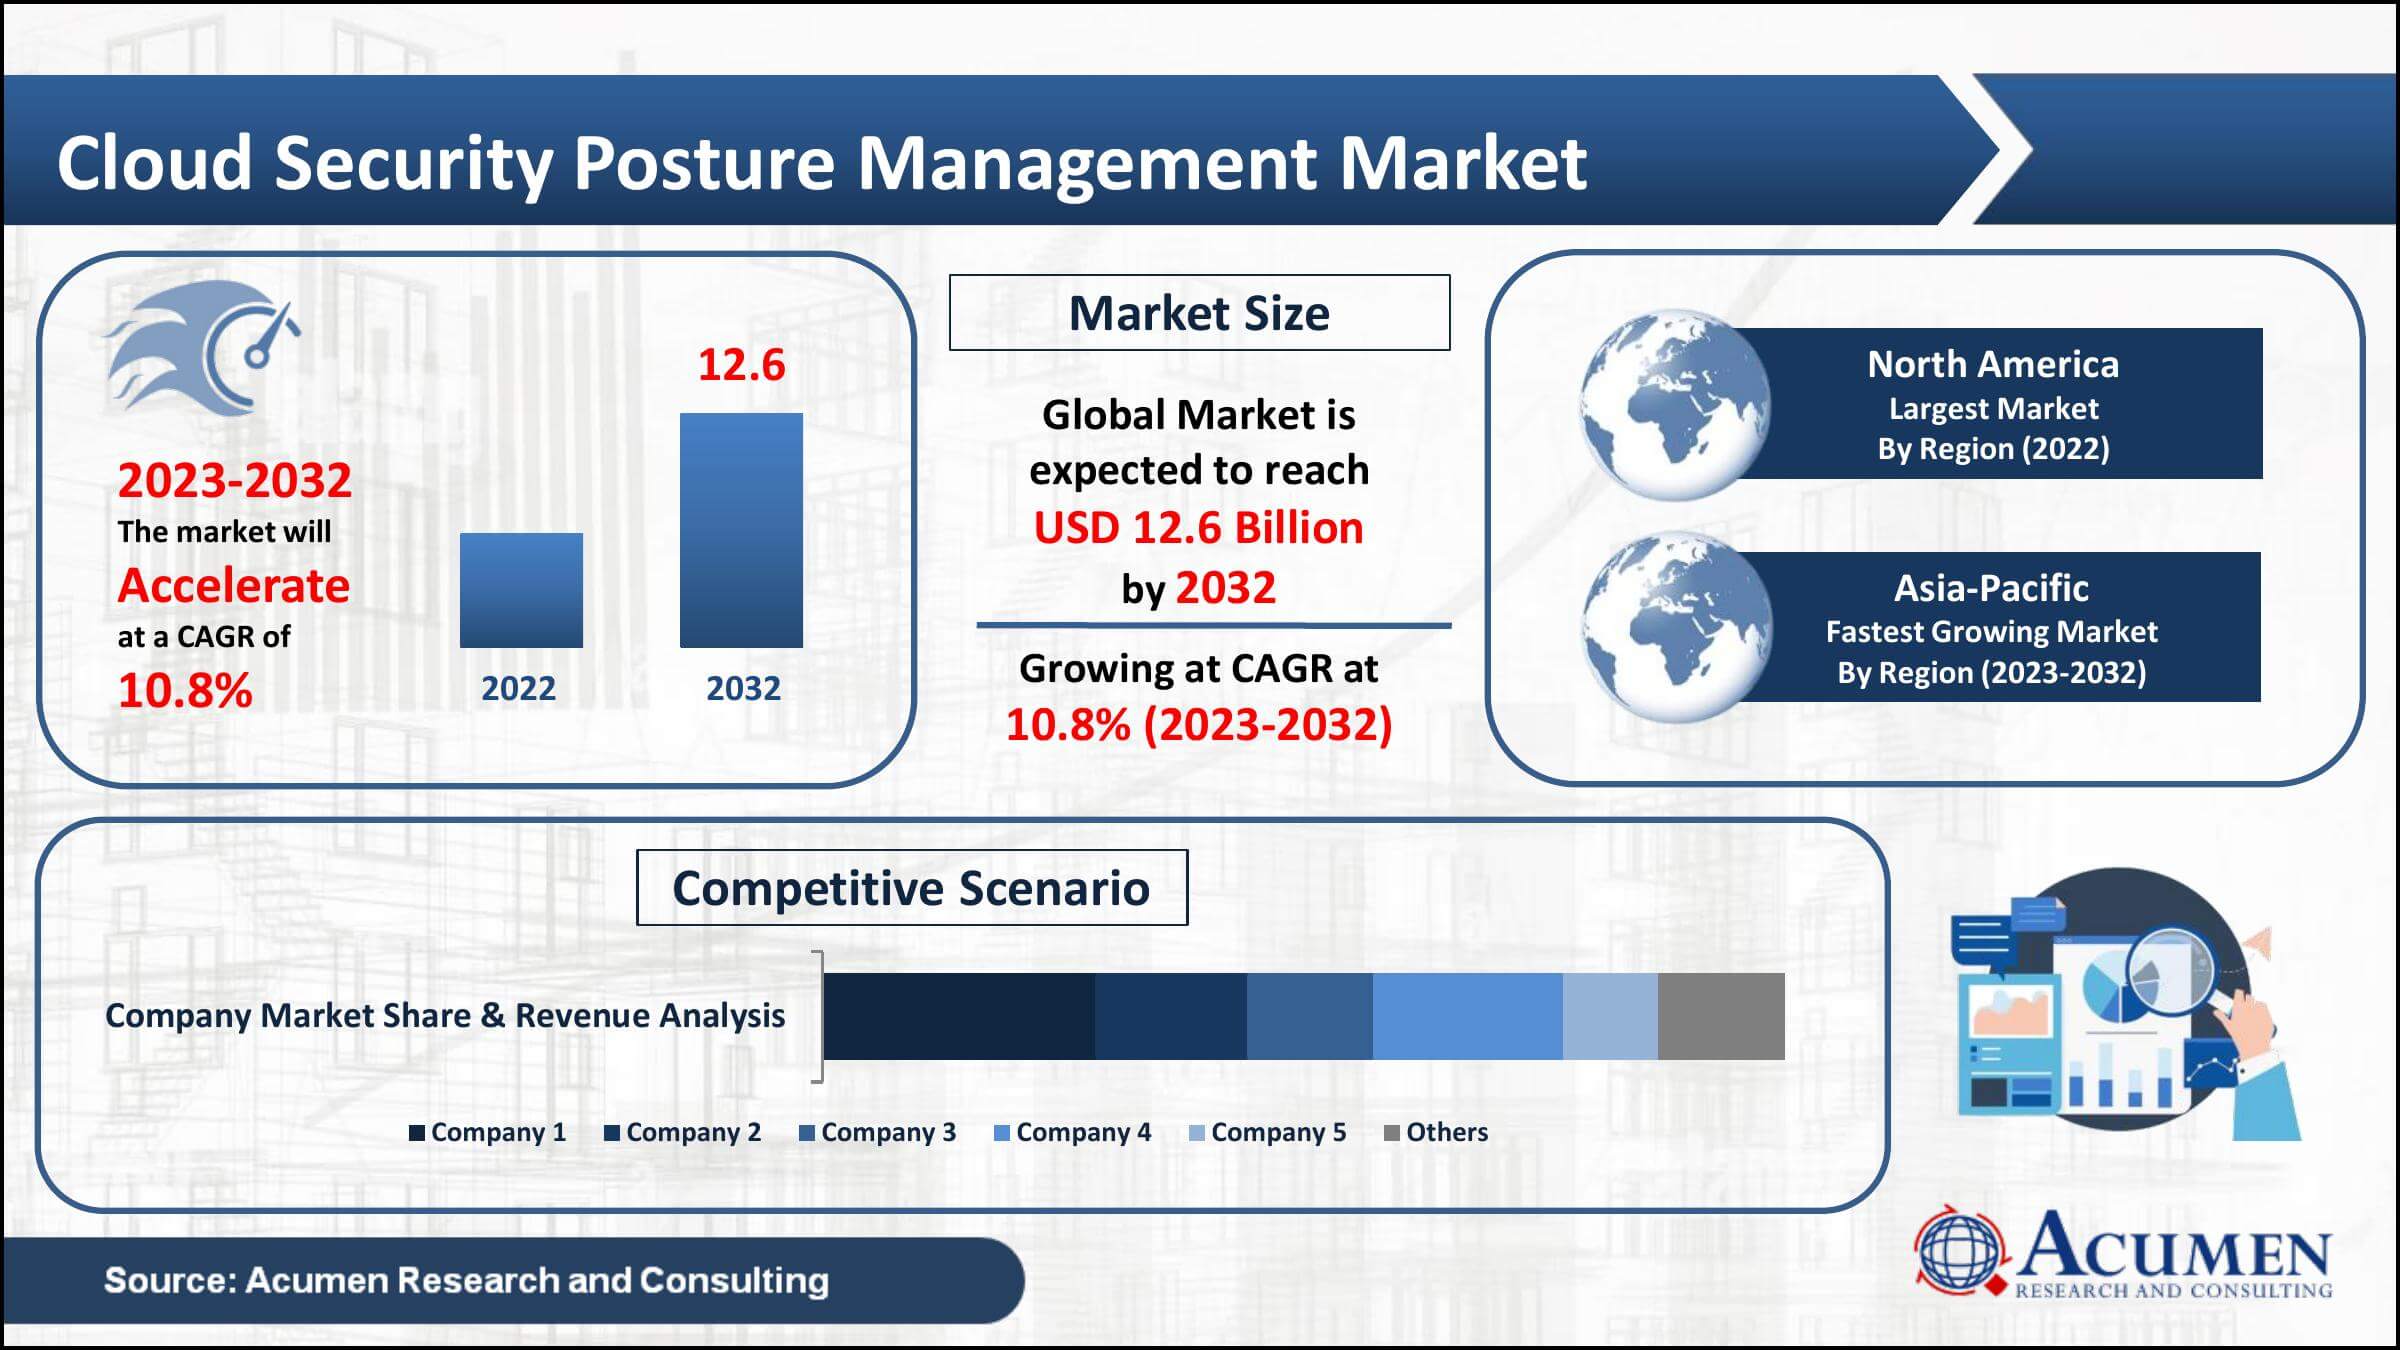 Cloud Security Posture Management Market value